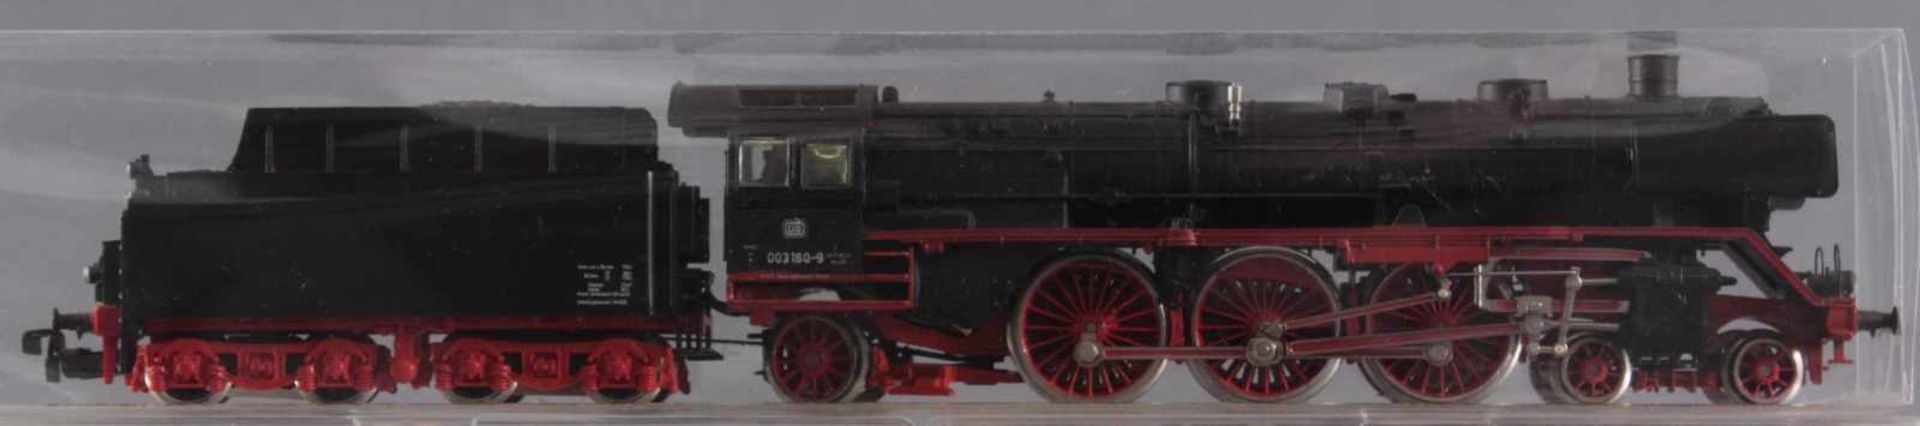 Märklin H0 Dampflok 003 160-9 mit 6 Fleischmann GüterwaggonsModellnummer der Waggons 5885, 5300, - Image 2 of 2